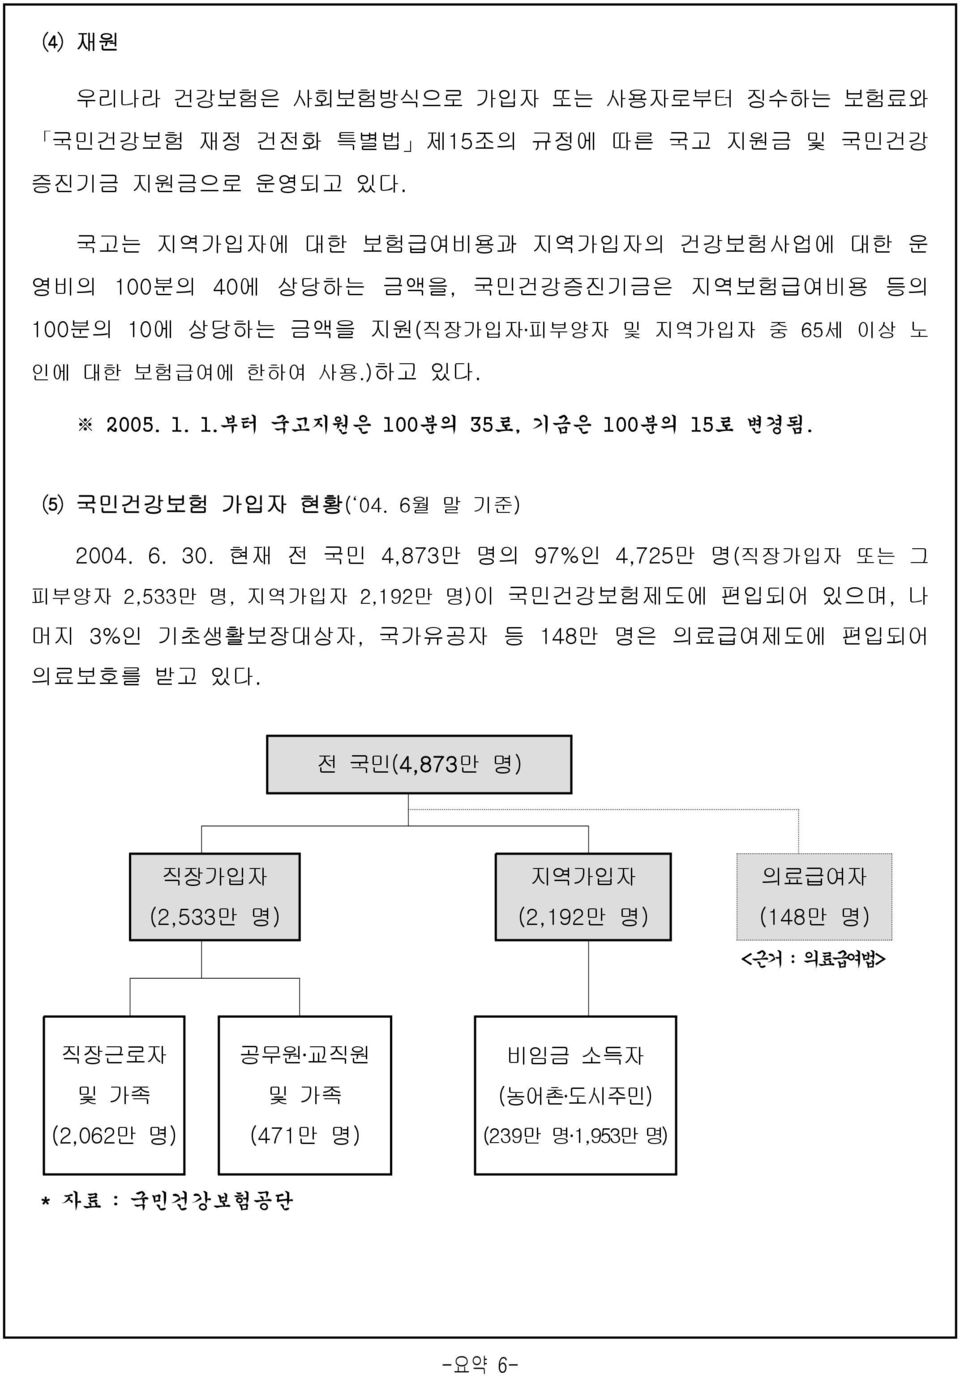 ⑸ 국민건강보험 가입자 현황( 04. 6월 말 기준) 2004. 6. 30.